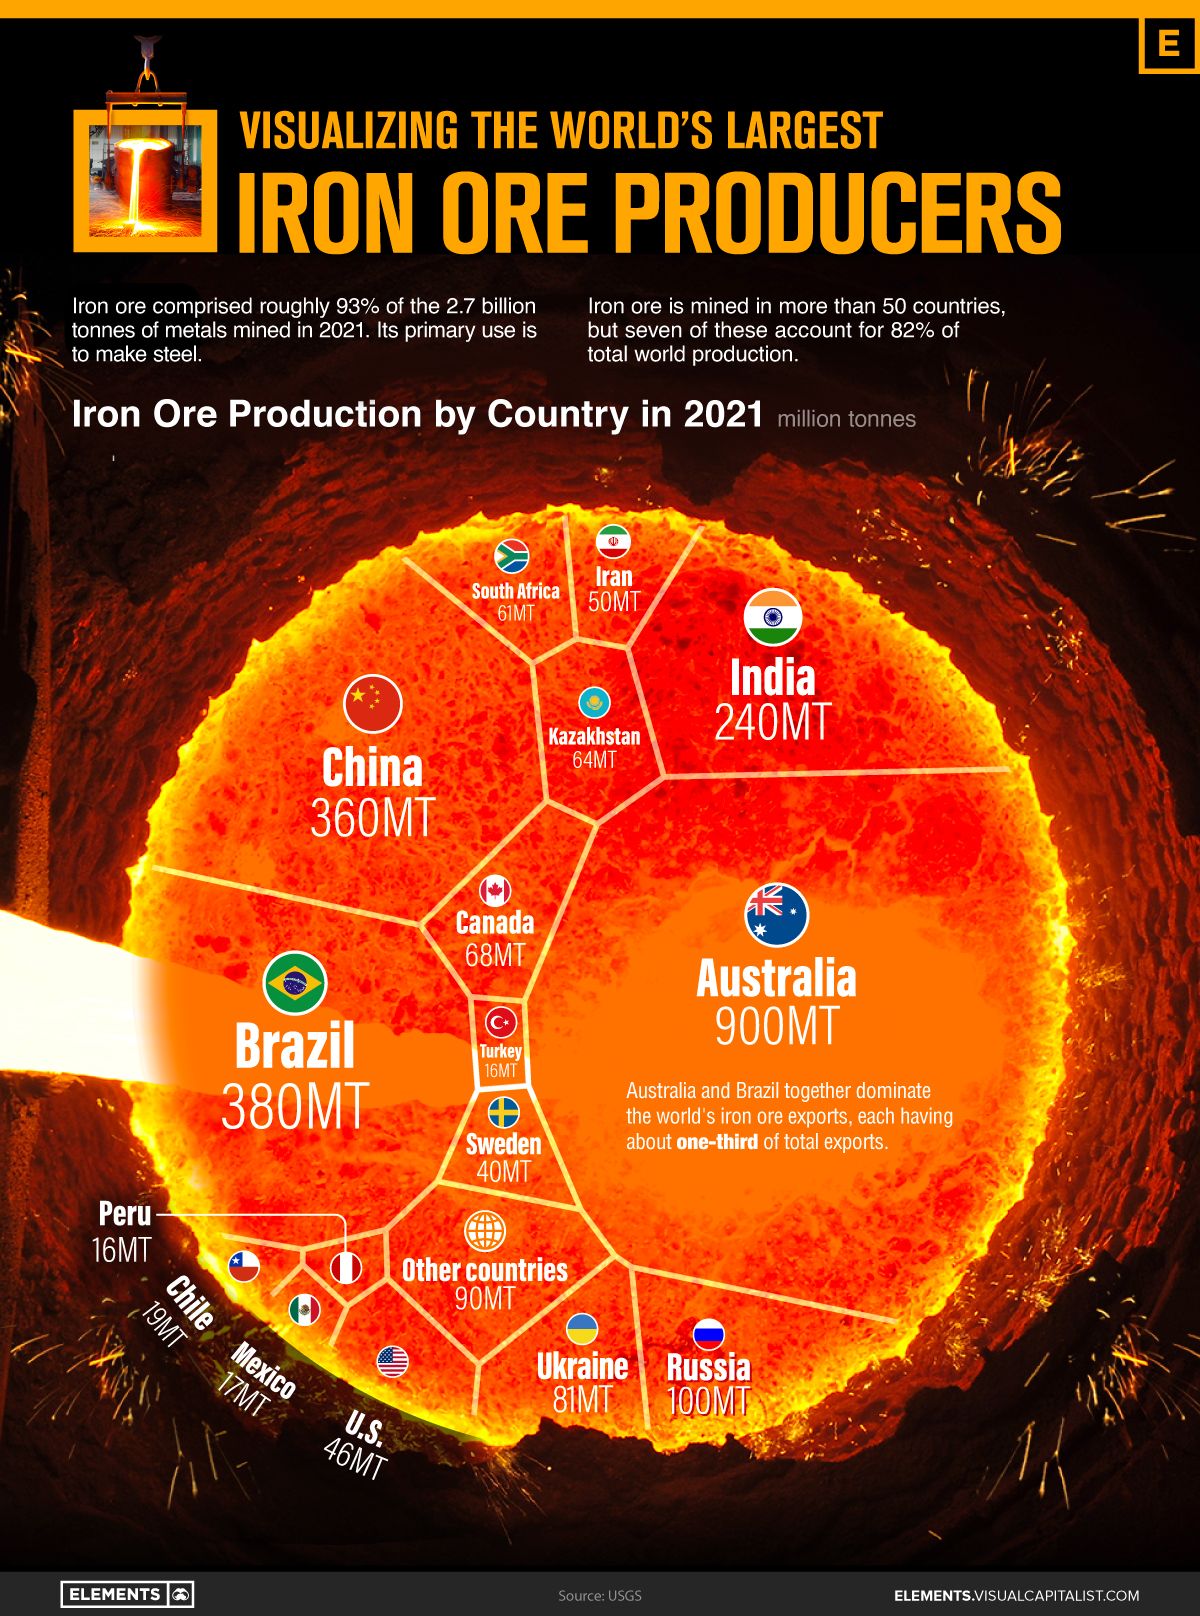 Visualizing the World’s Largest Iron Ore Producers